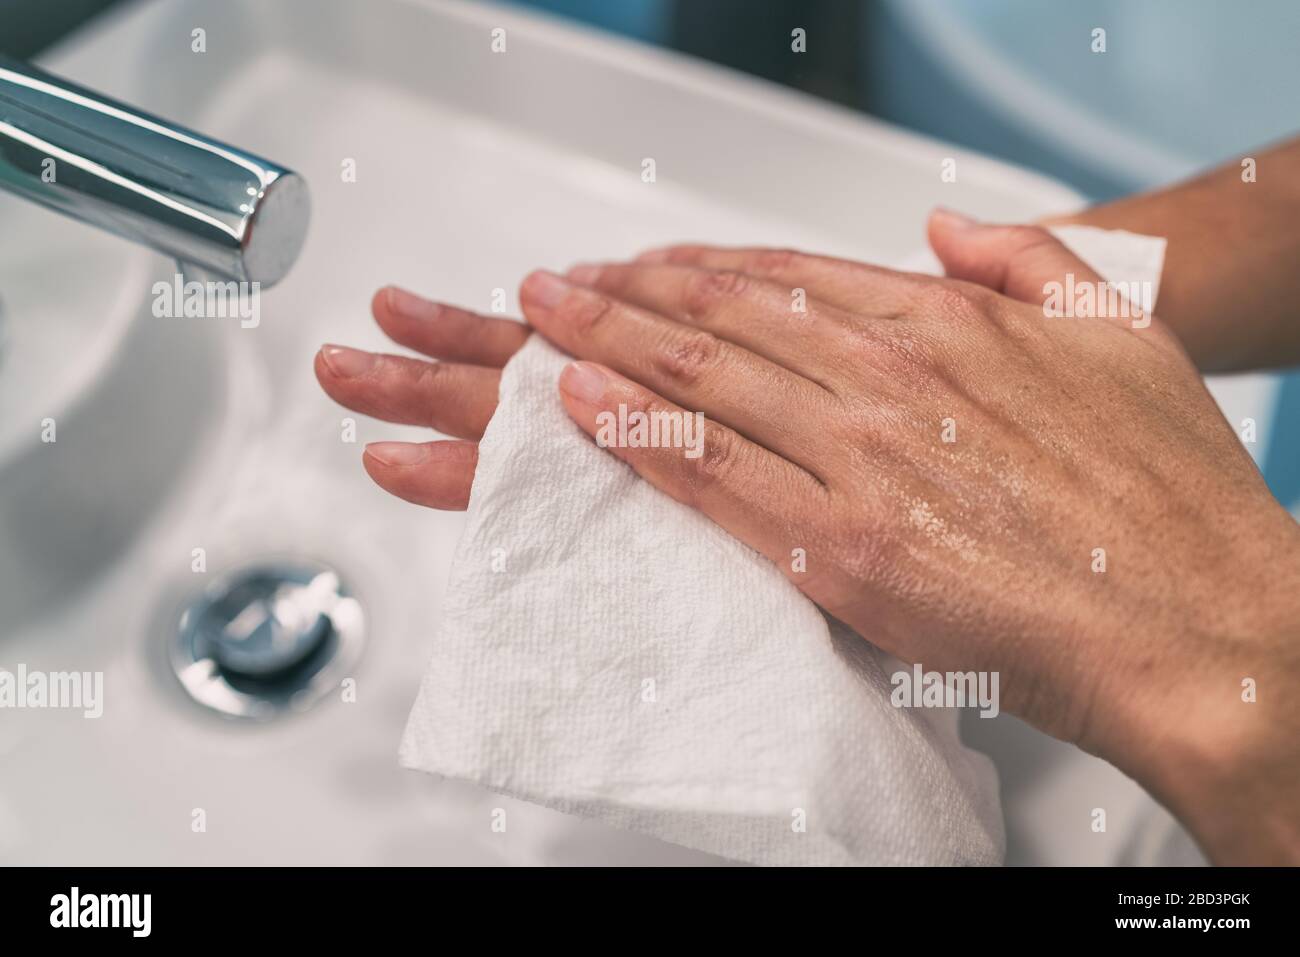 Lavage des mains étapes pour l'hygiène personnelle COVID-19 prévention sécher la main avec une serviette en papier après lavage à la main. Nettoyage préventif de l'infection du coronavirus. Banque D'Images